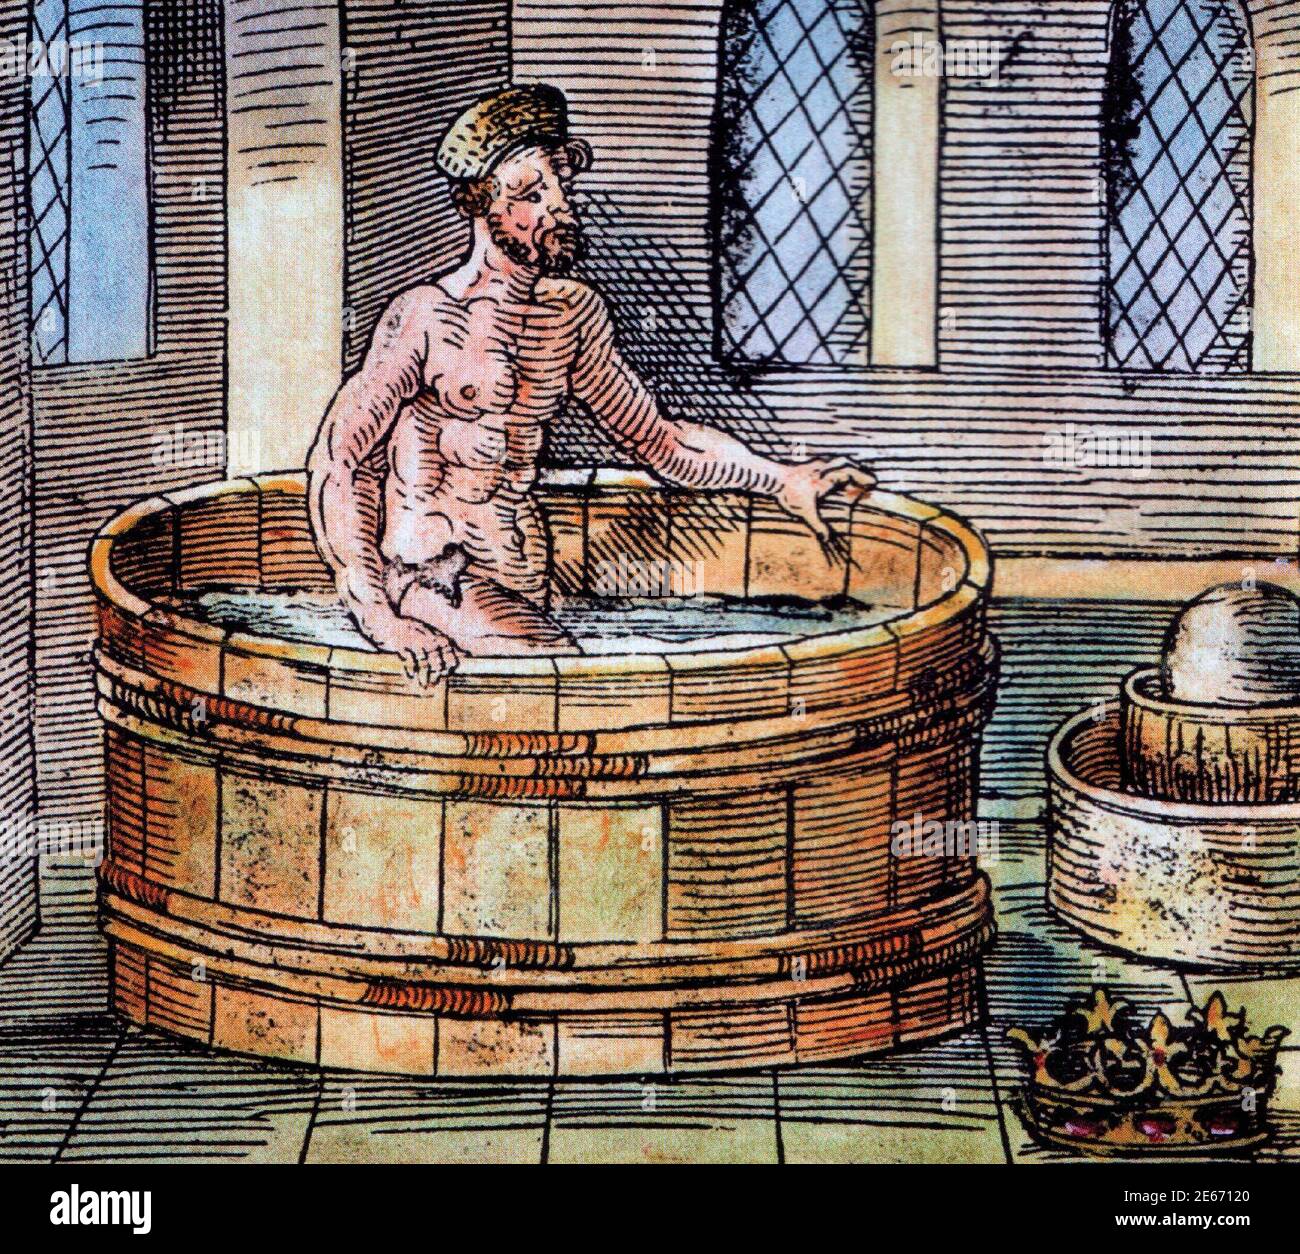 Le philosophe grec Archimedes dans son bain - sculpture du XVIe siècle. Banque D'Images